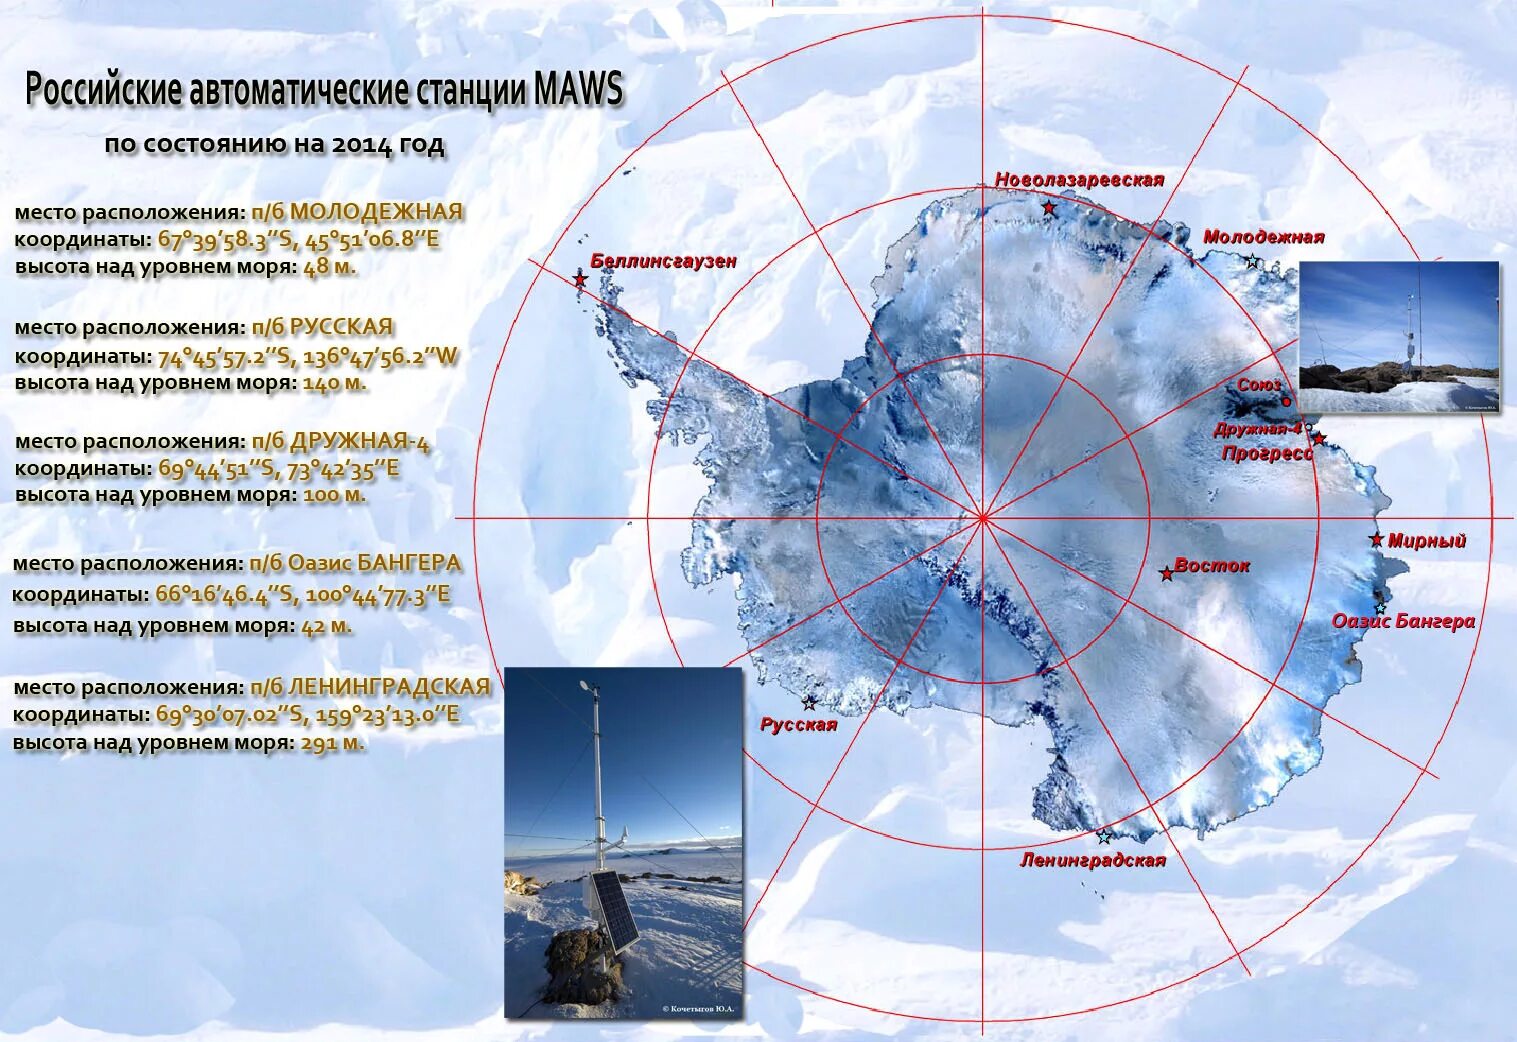 Название антарктических станций. Научная станция Восток в Антарктиде на карте. Российская научная антарктическая станция Восток на карте. Научная станция Беллинсгаузен в Антарктиде на карте. Станция Беллинсгаузен в Антарктиде.